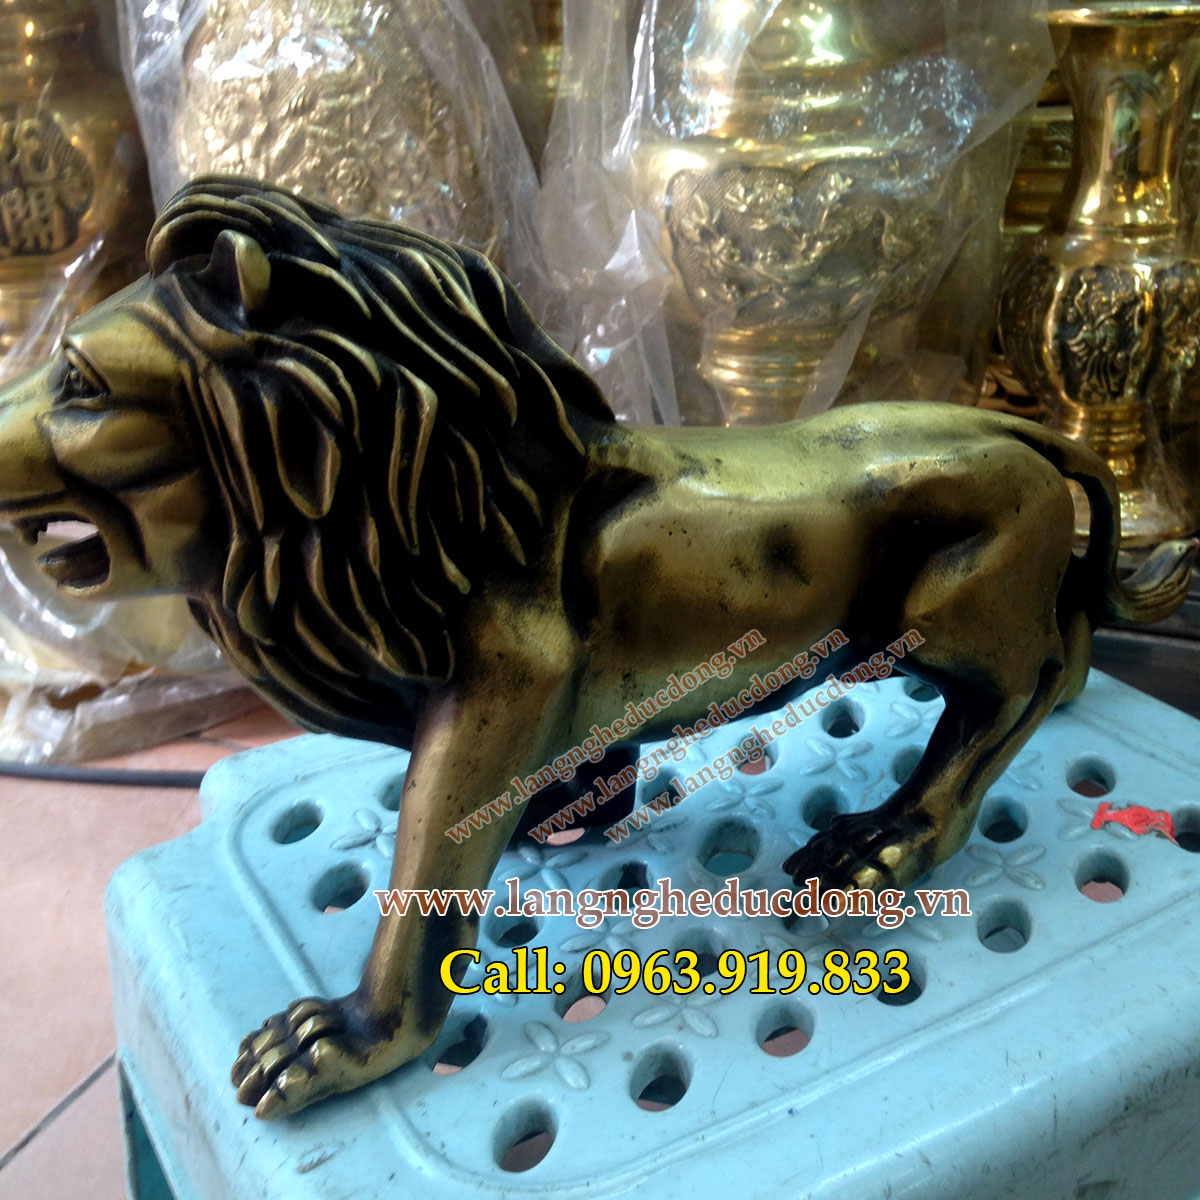 langngheducdong.vn - tượng đồng, tượng sư tử, tượng phong thủy, tượng trang trí